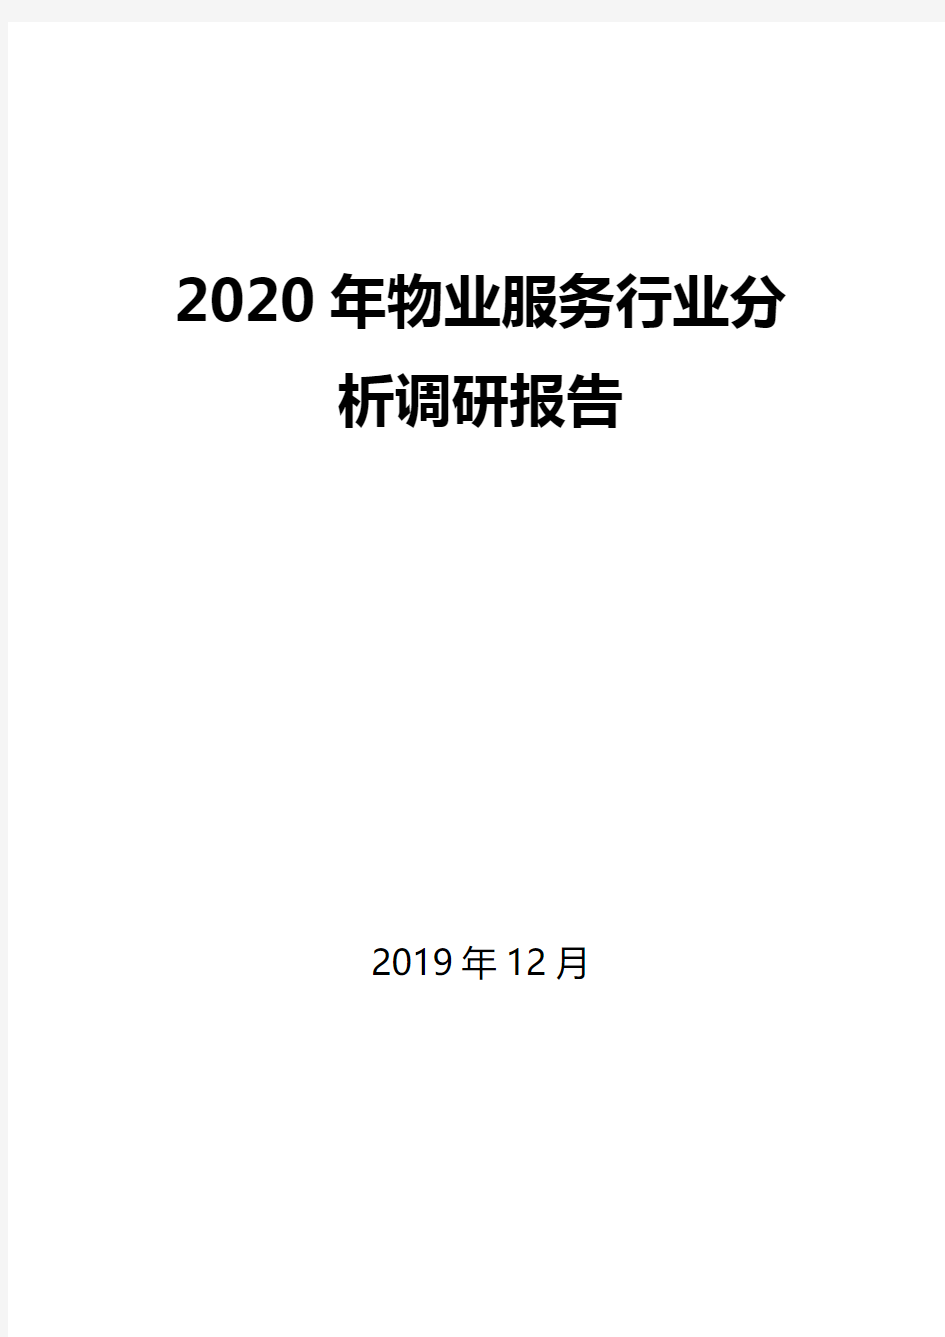 2020年物业服务行业分析调研报告